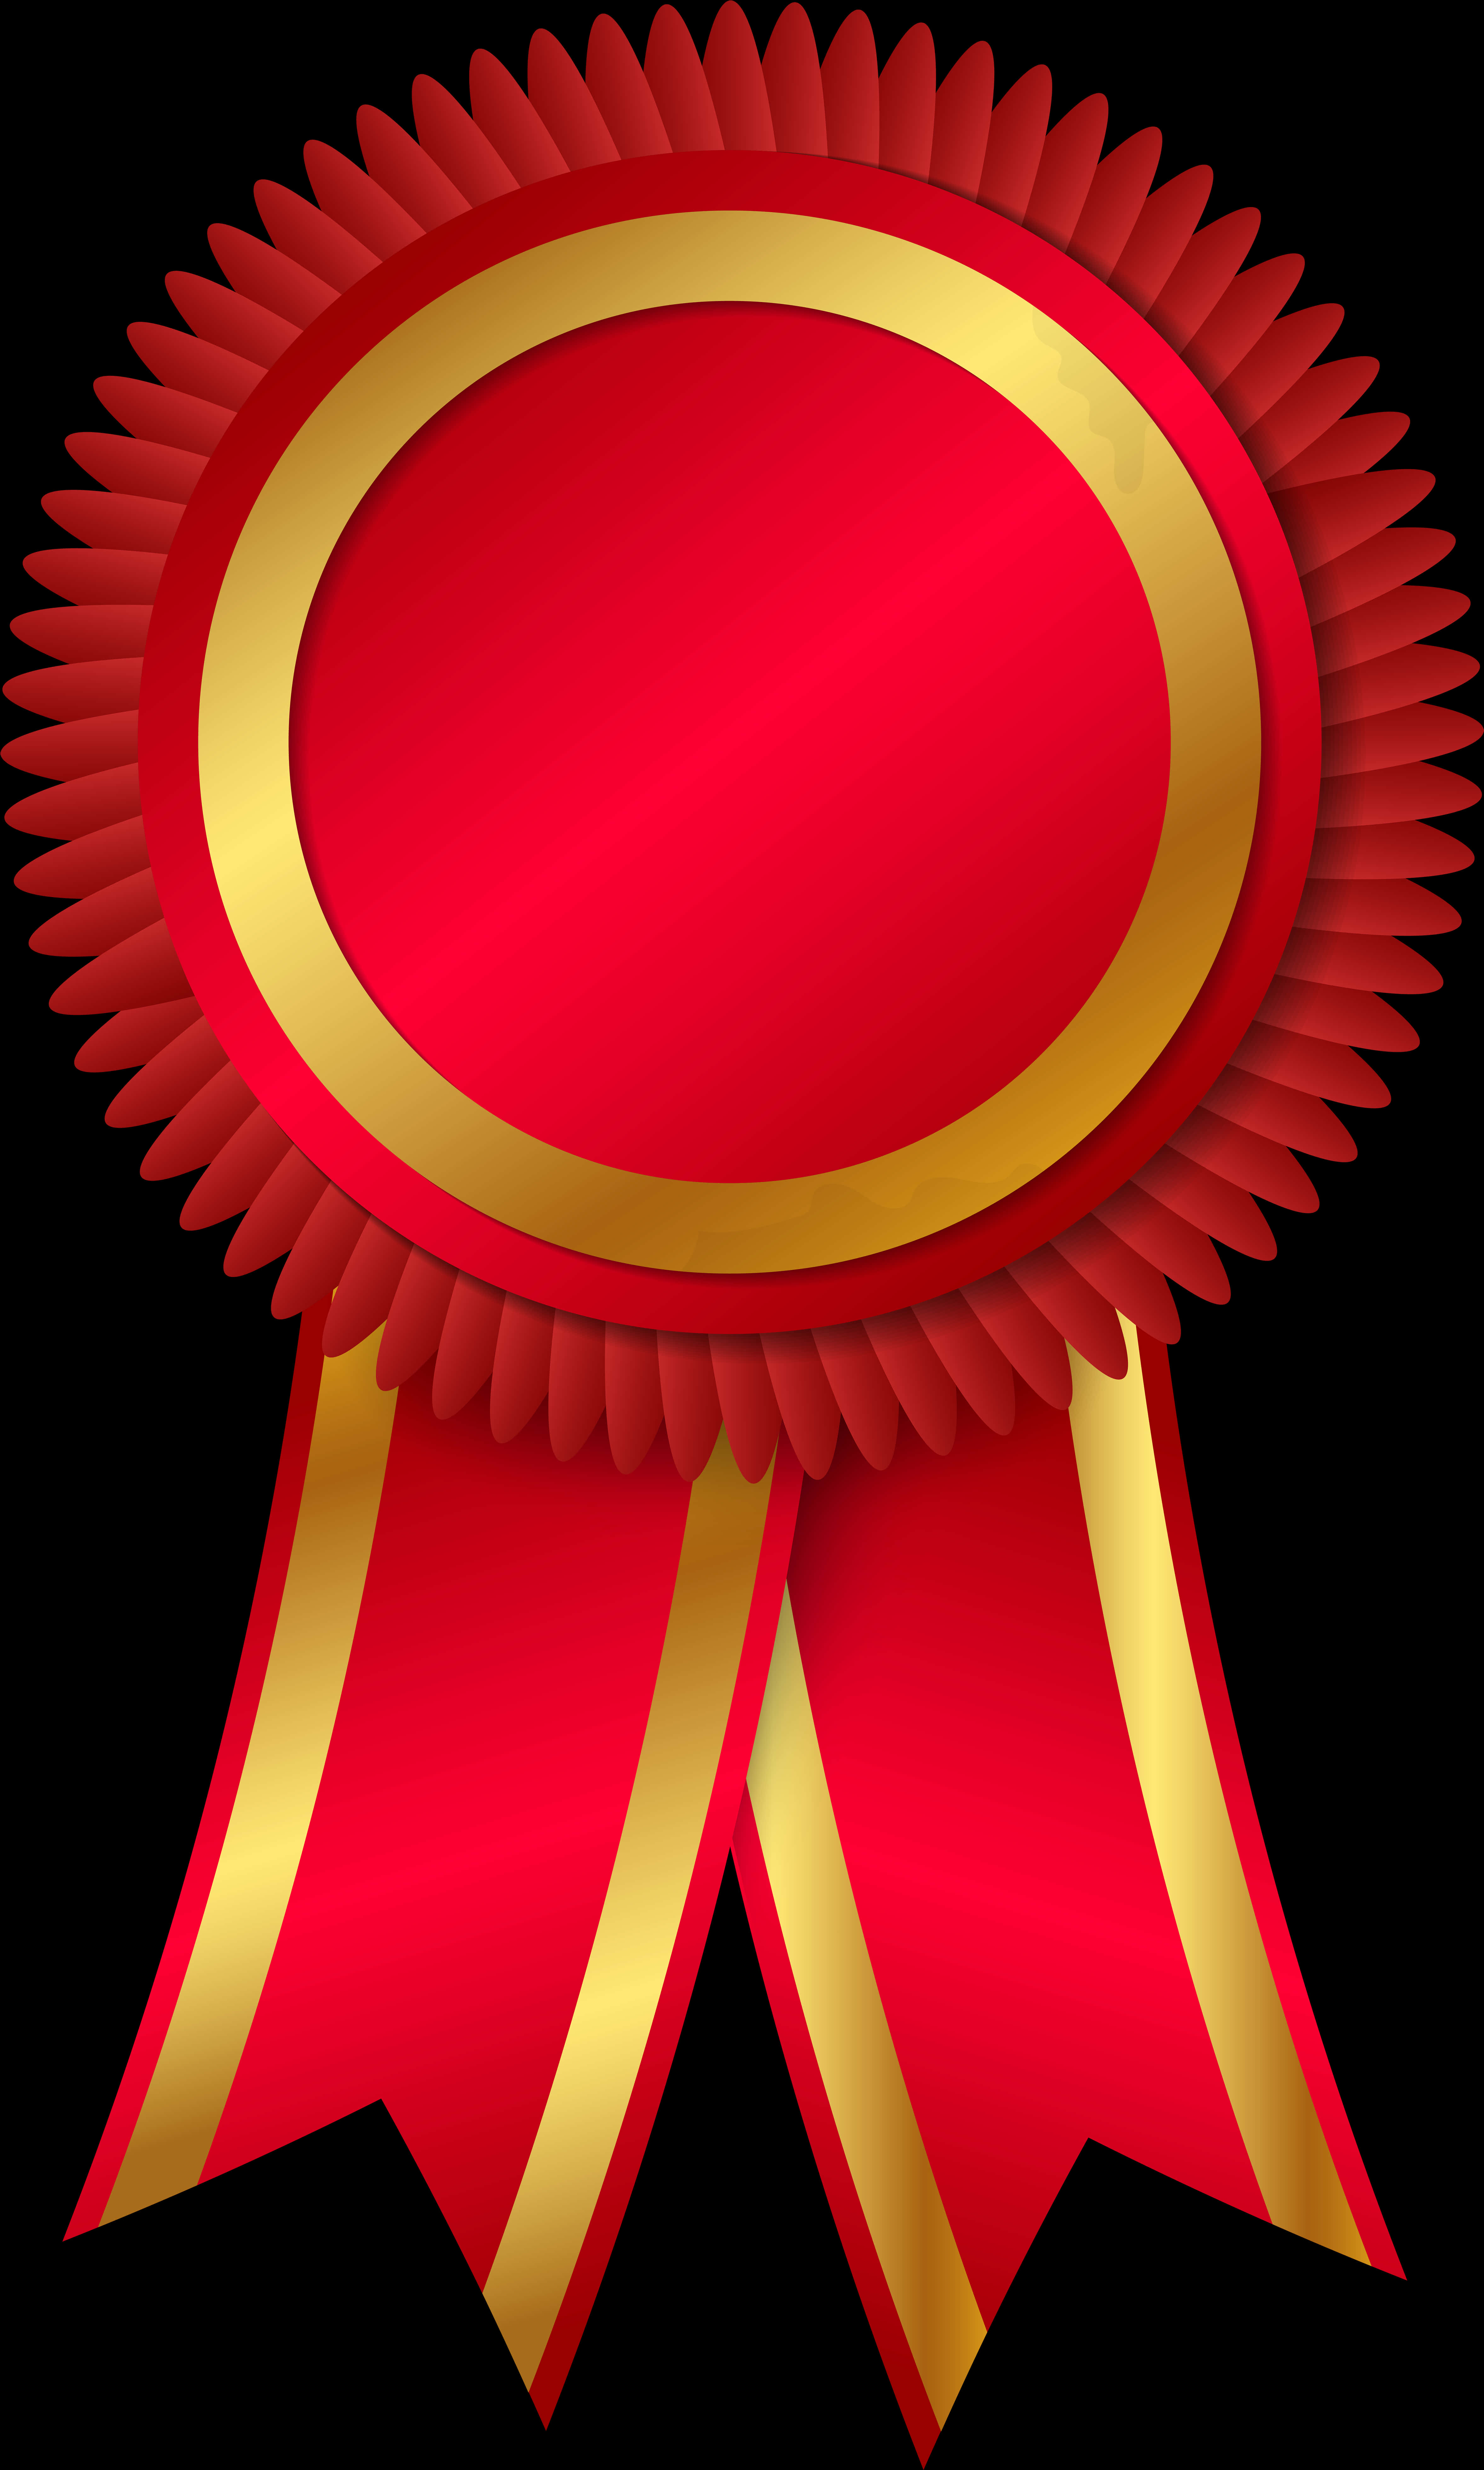 A Red And Gold Award Ribbon